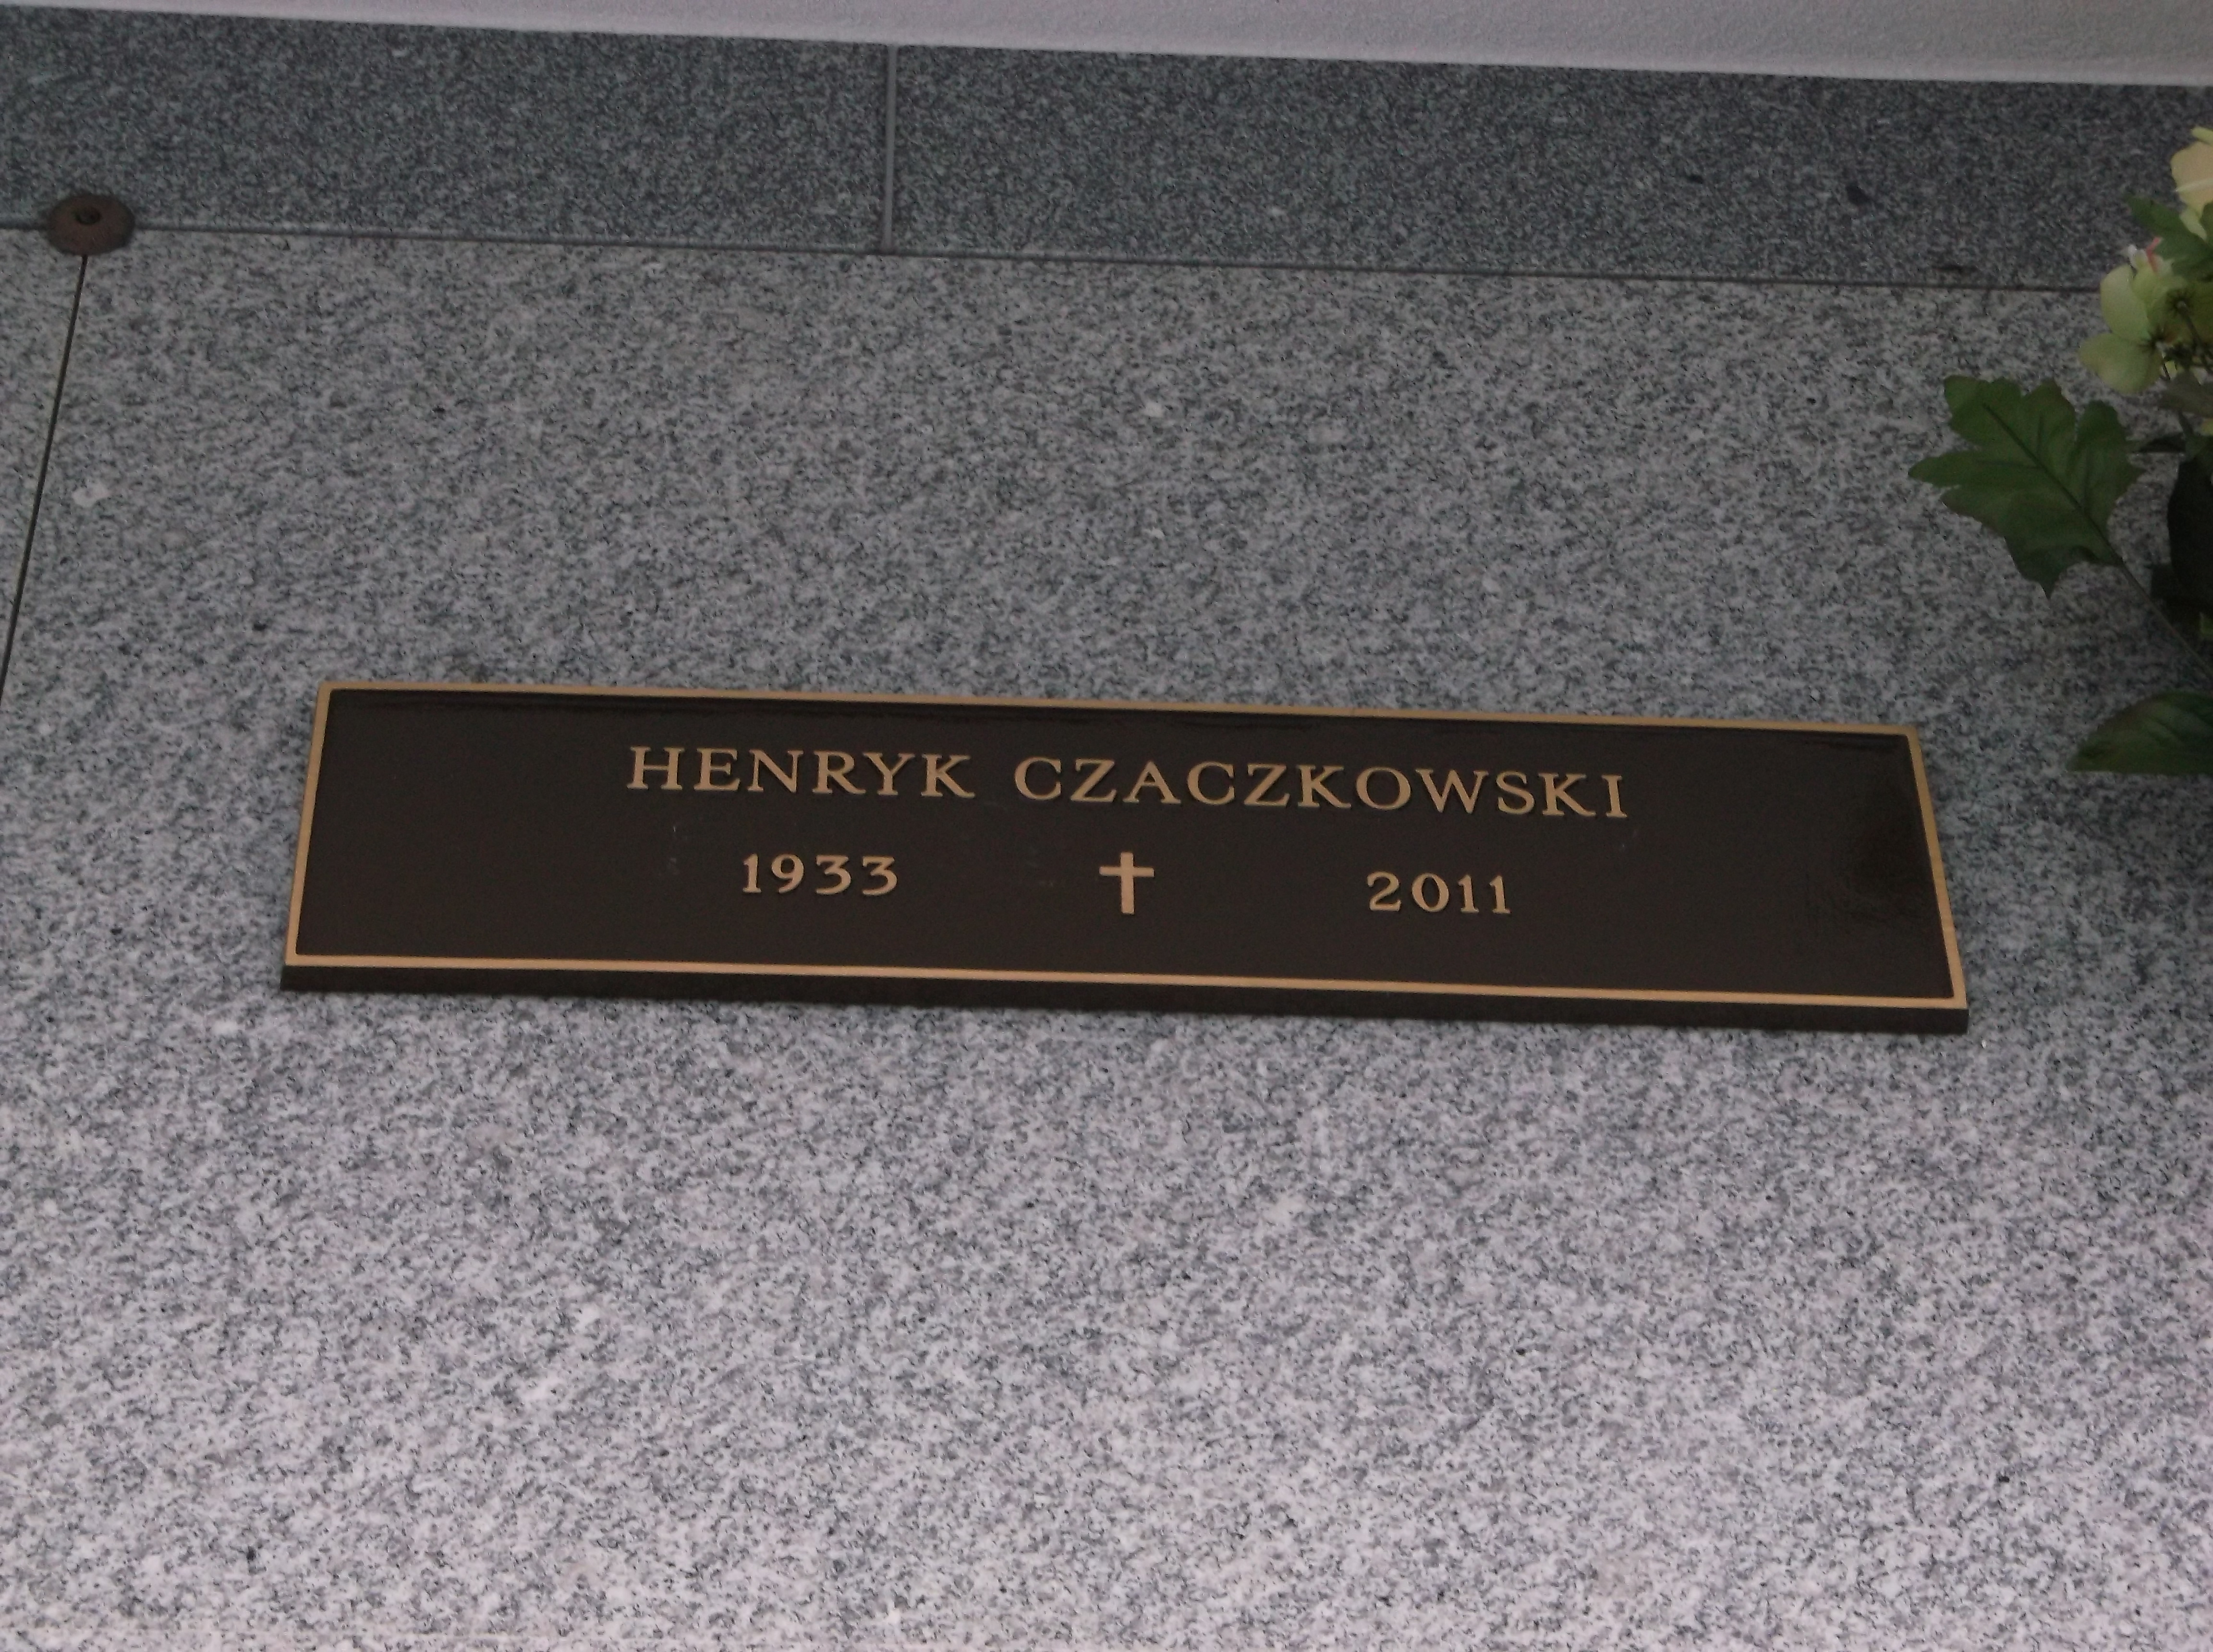 Henryk Czaczkowski